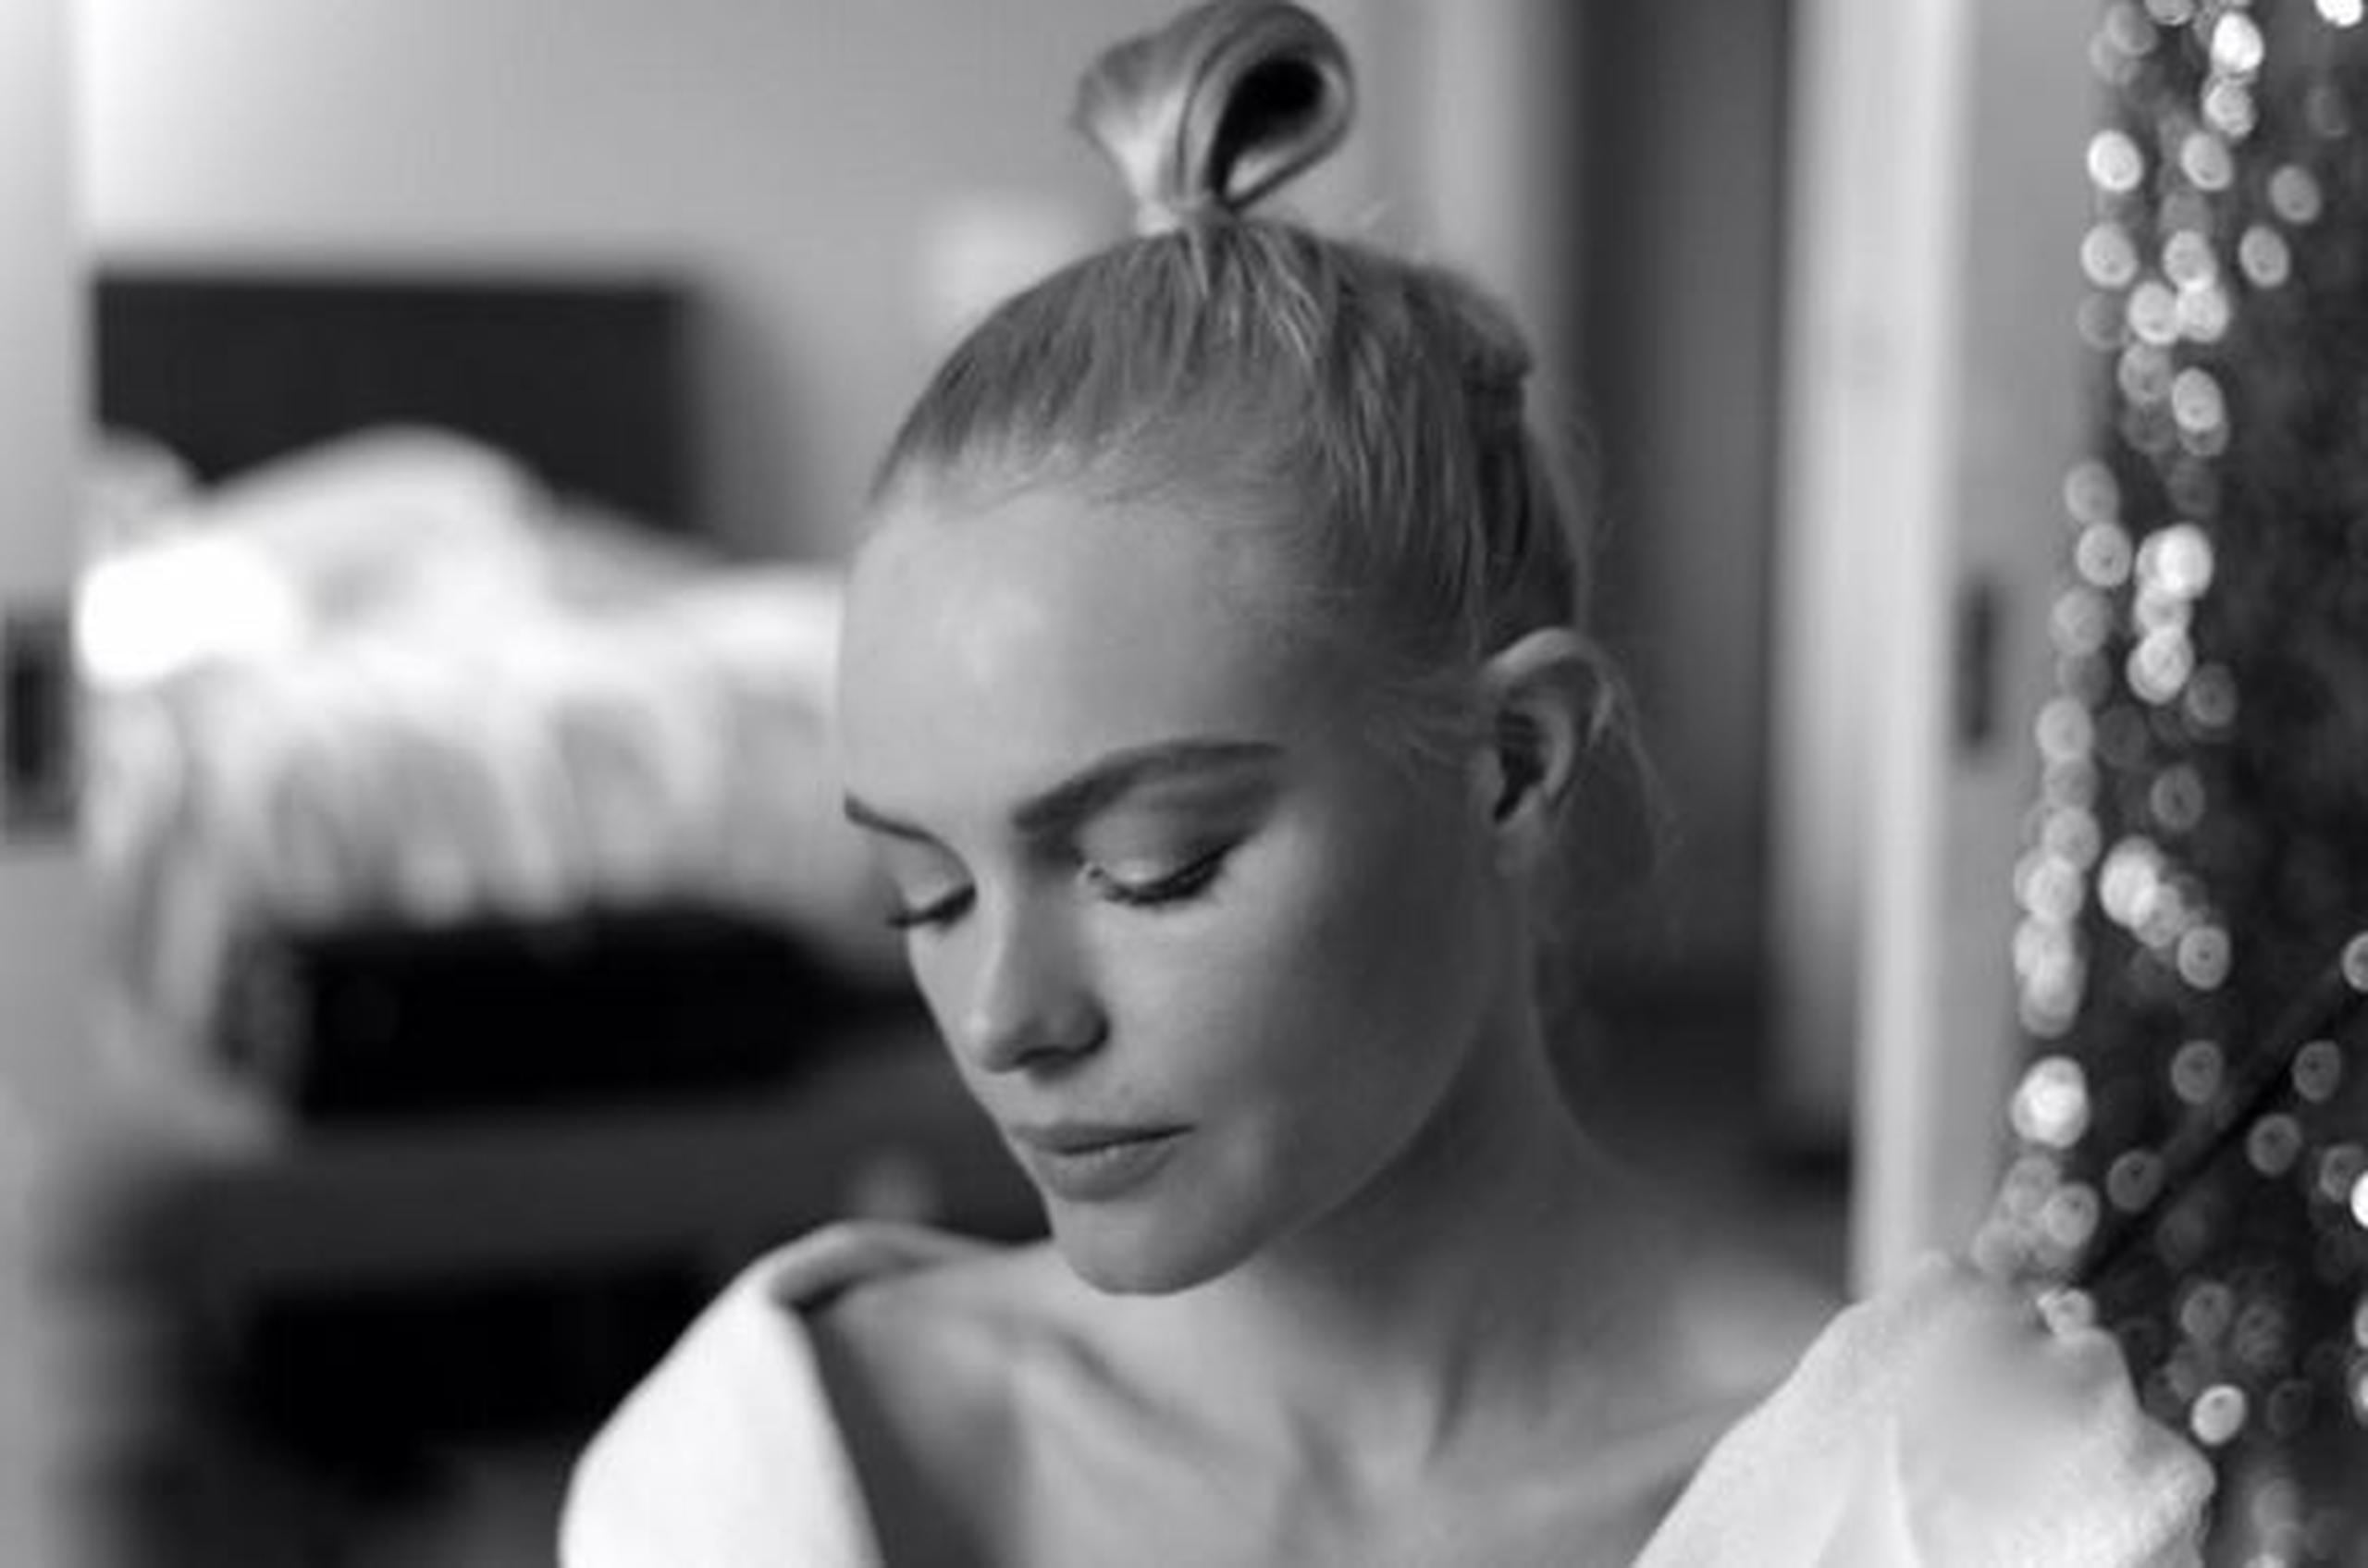 La actriz norteamericana colocó unas fotos suyas mientras era maquillada con el mensaje "En proceso". (Instagram)